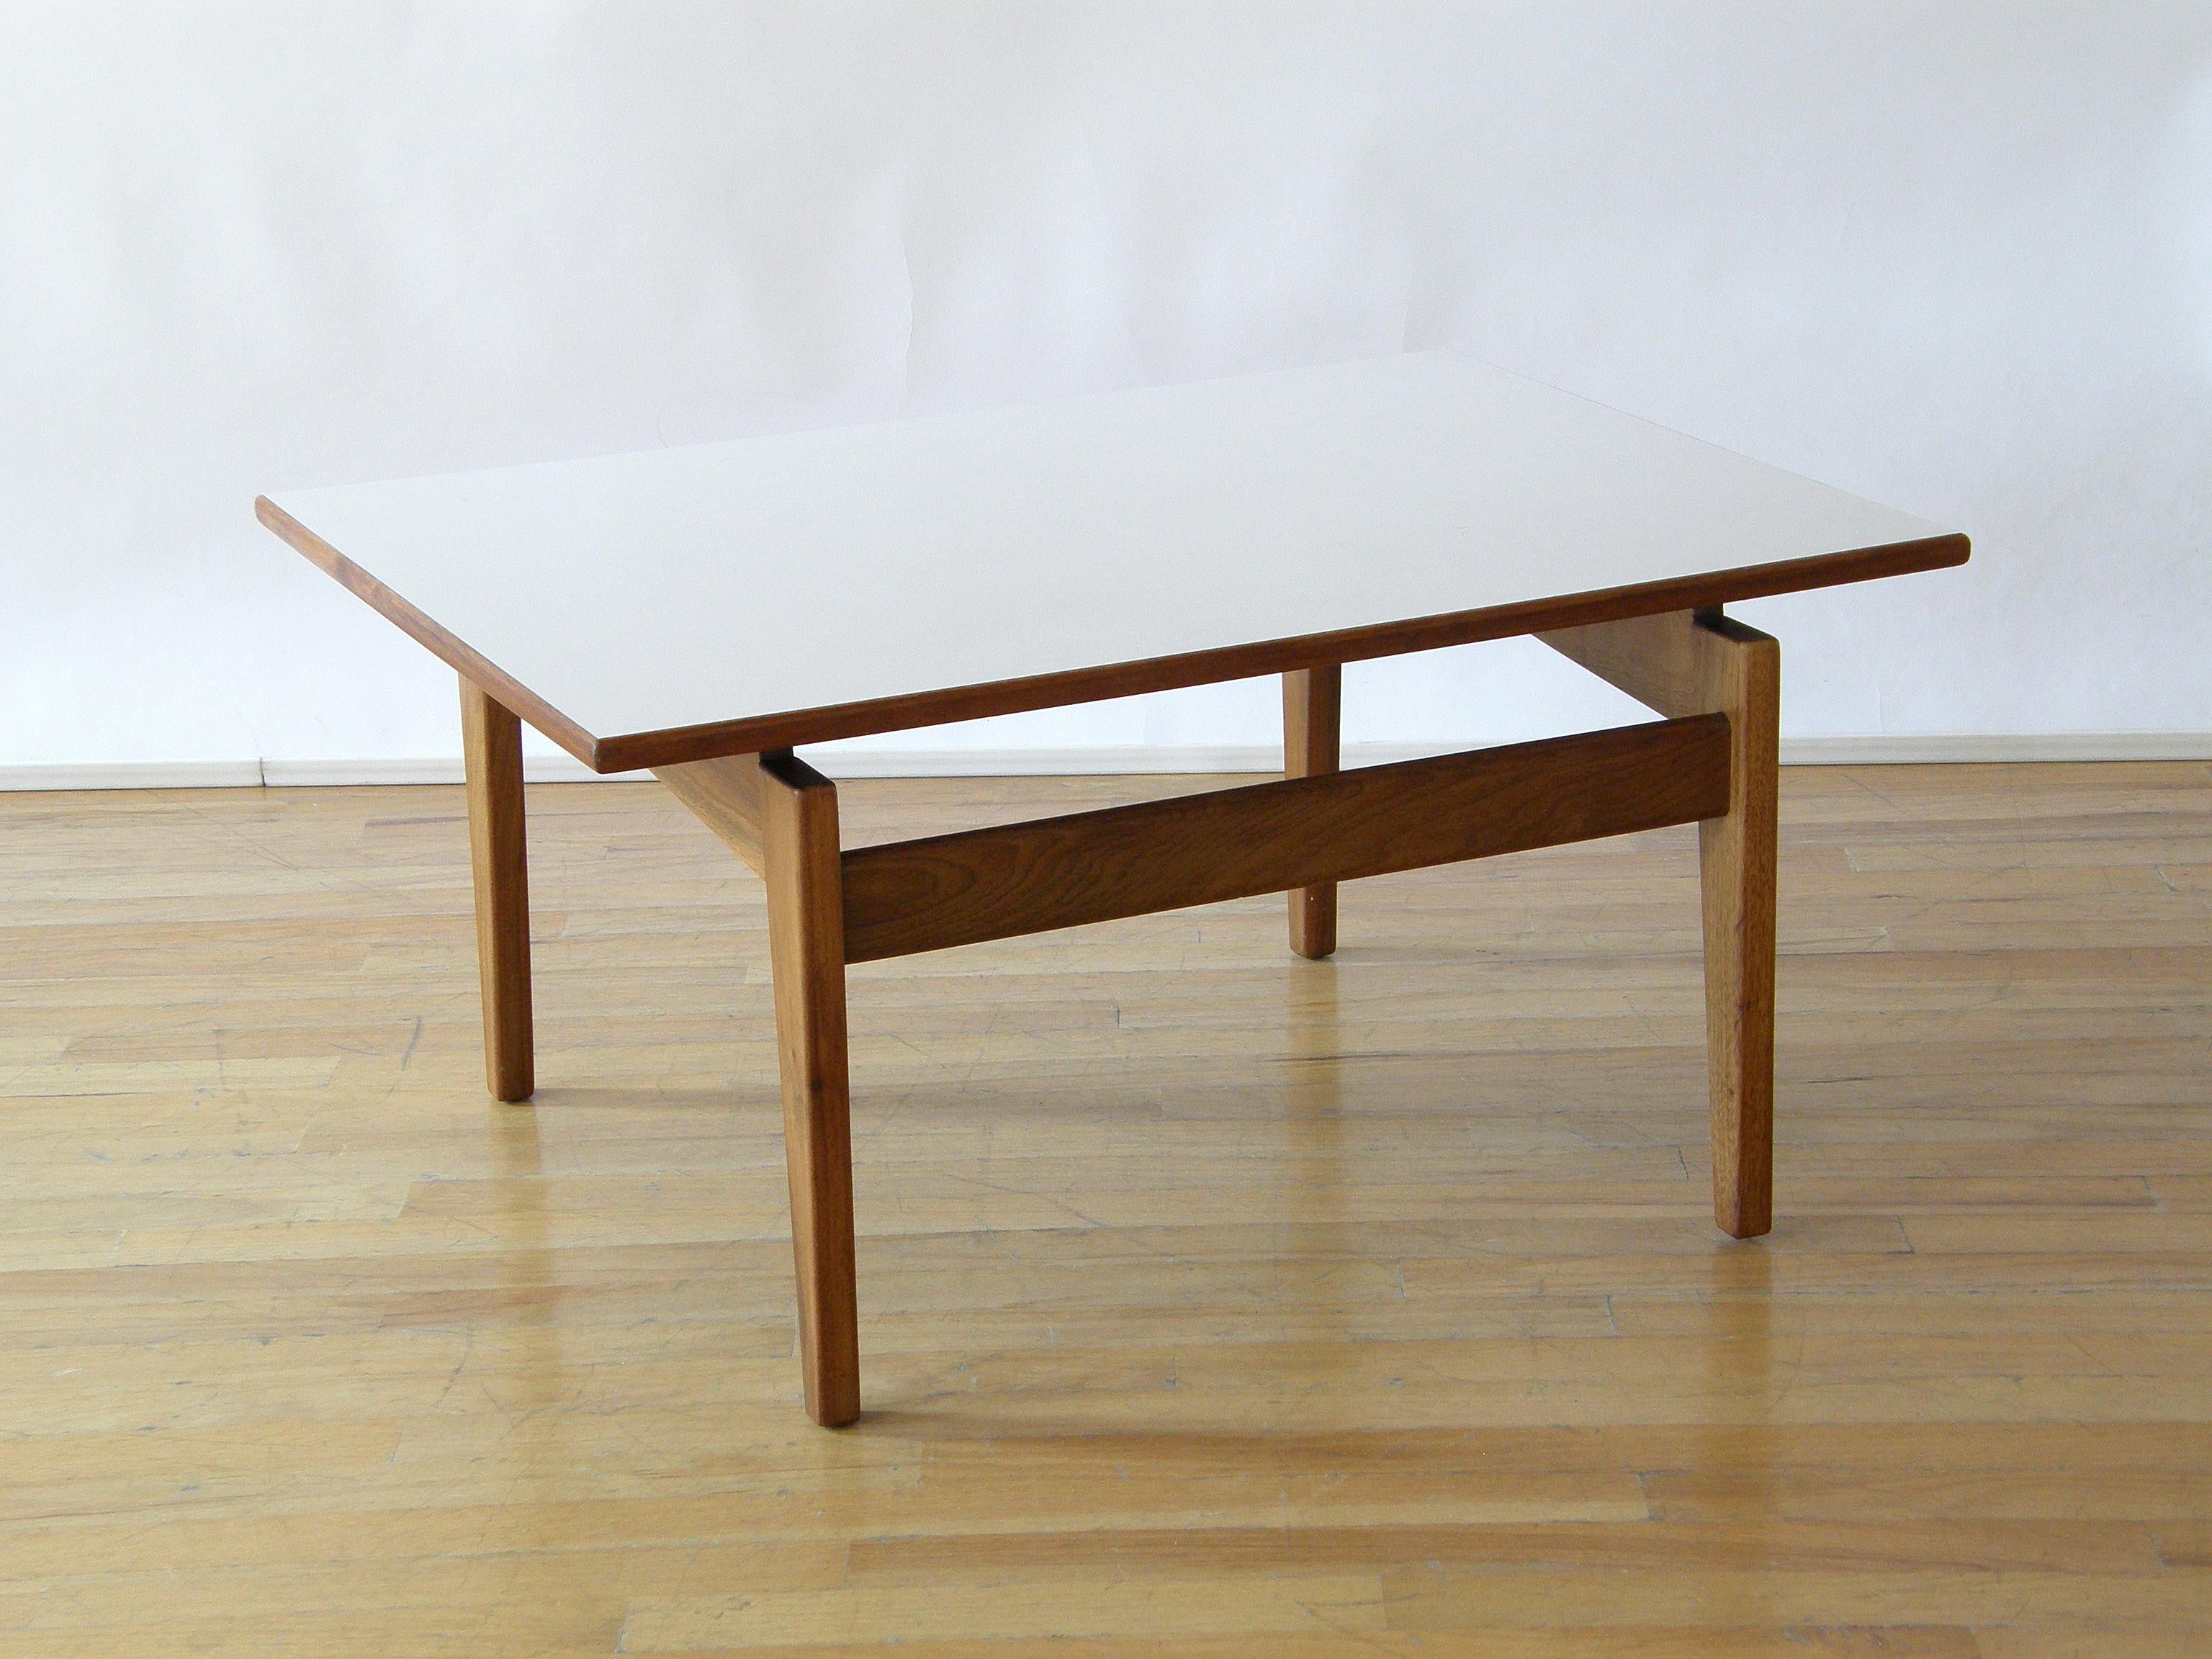 Cette table d'appoint rectangulaire de Jens Risom a une base en noyer et une surface en stratifié blanc. Les pieds sont astucieusement insérés, ce qui confère au plateau un caractère flottant et une allure globalement décontractée à la table.

   